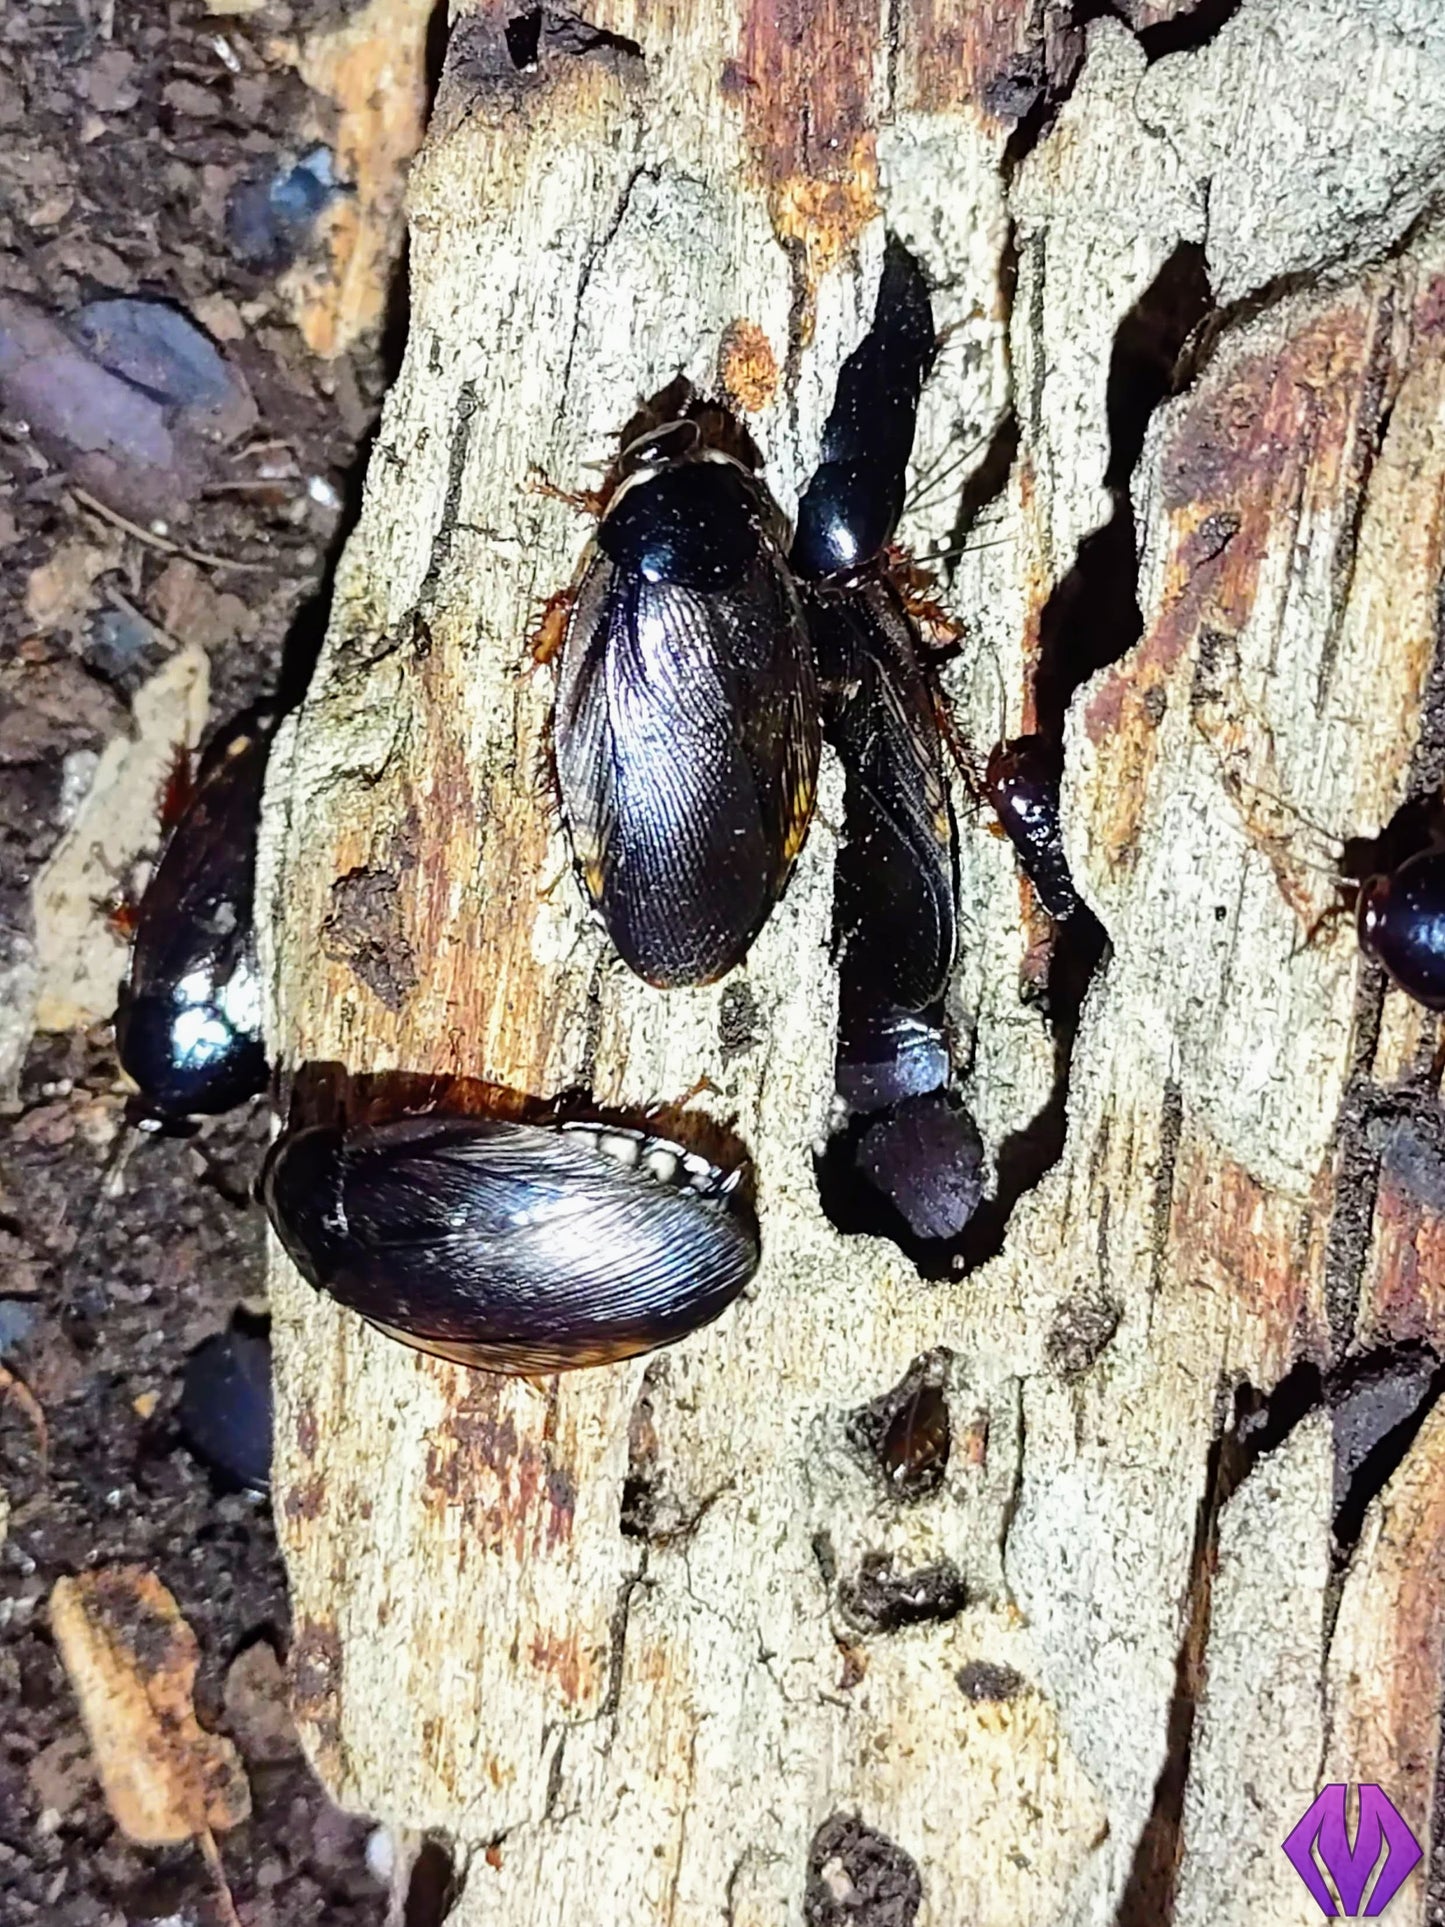 Pycnoscelus surinamensis (Surinam roach "dark")